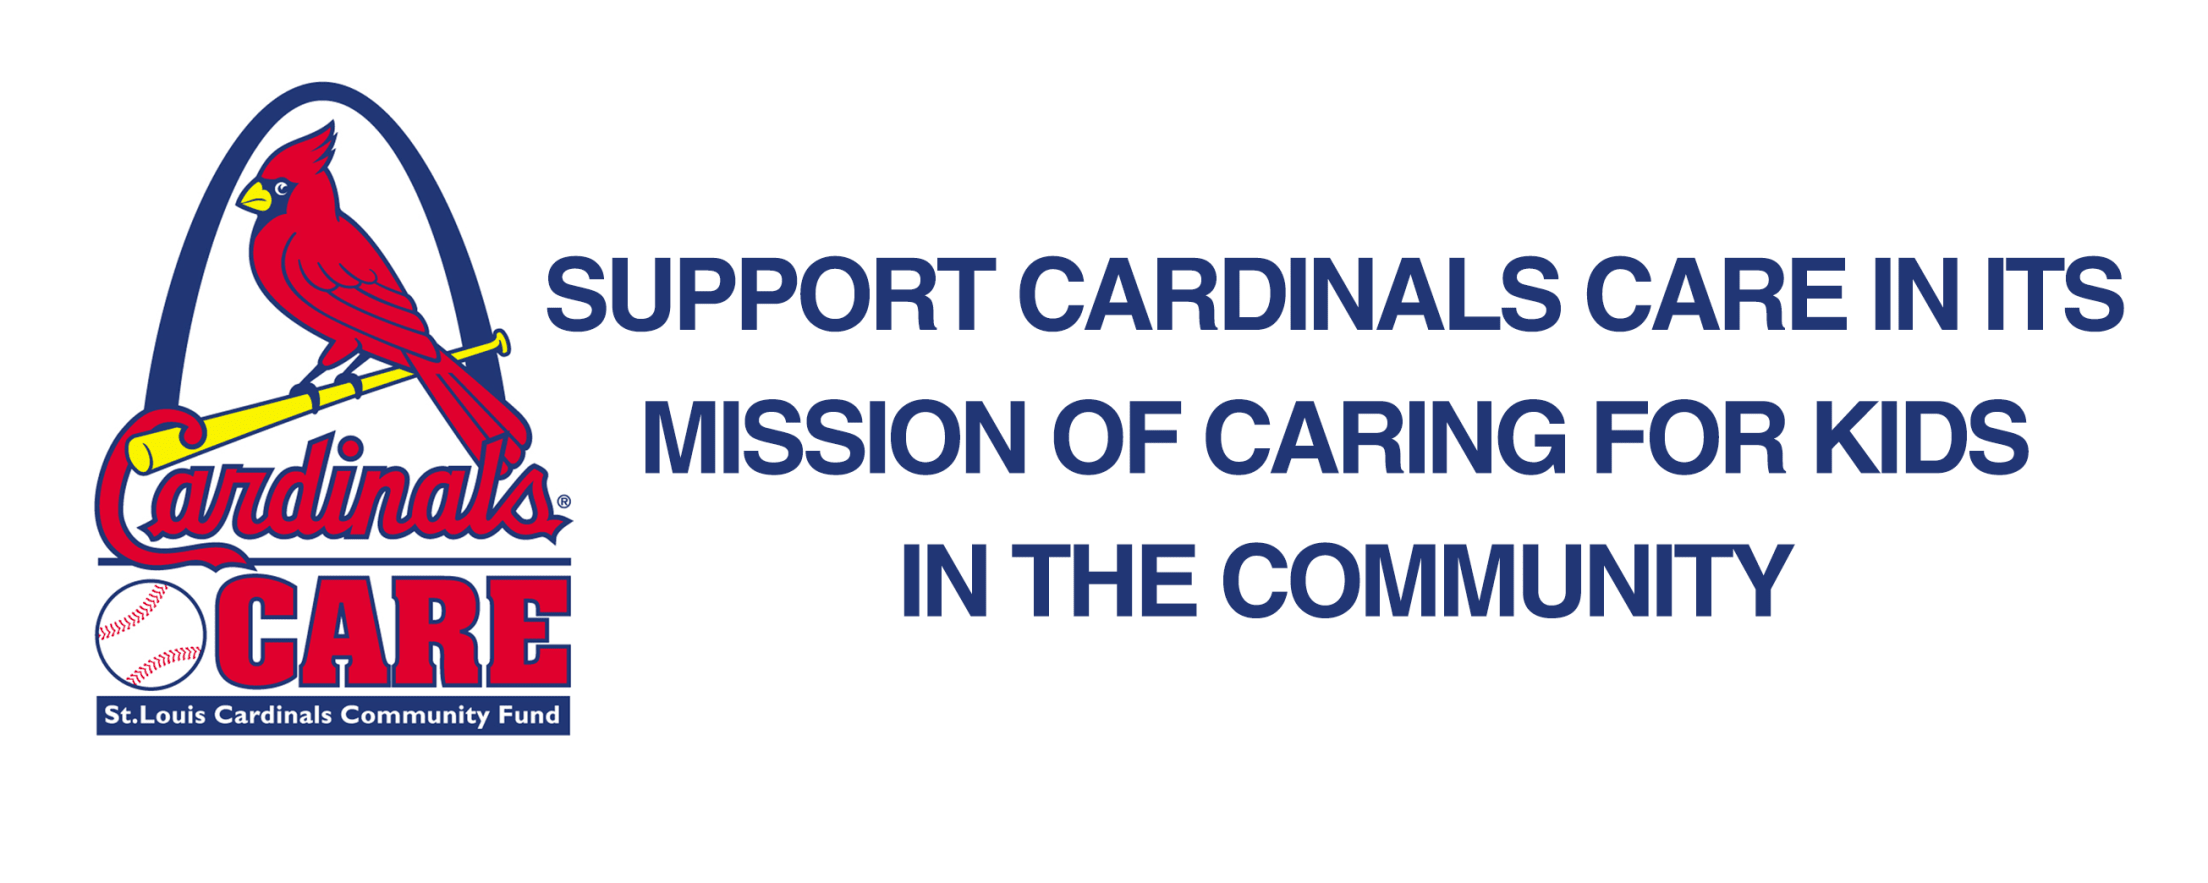 Caring Cardinal 